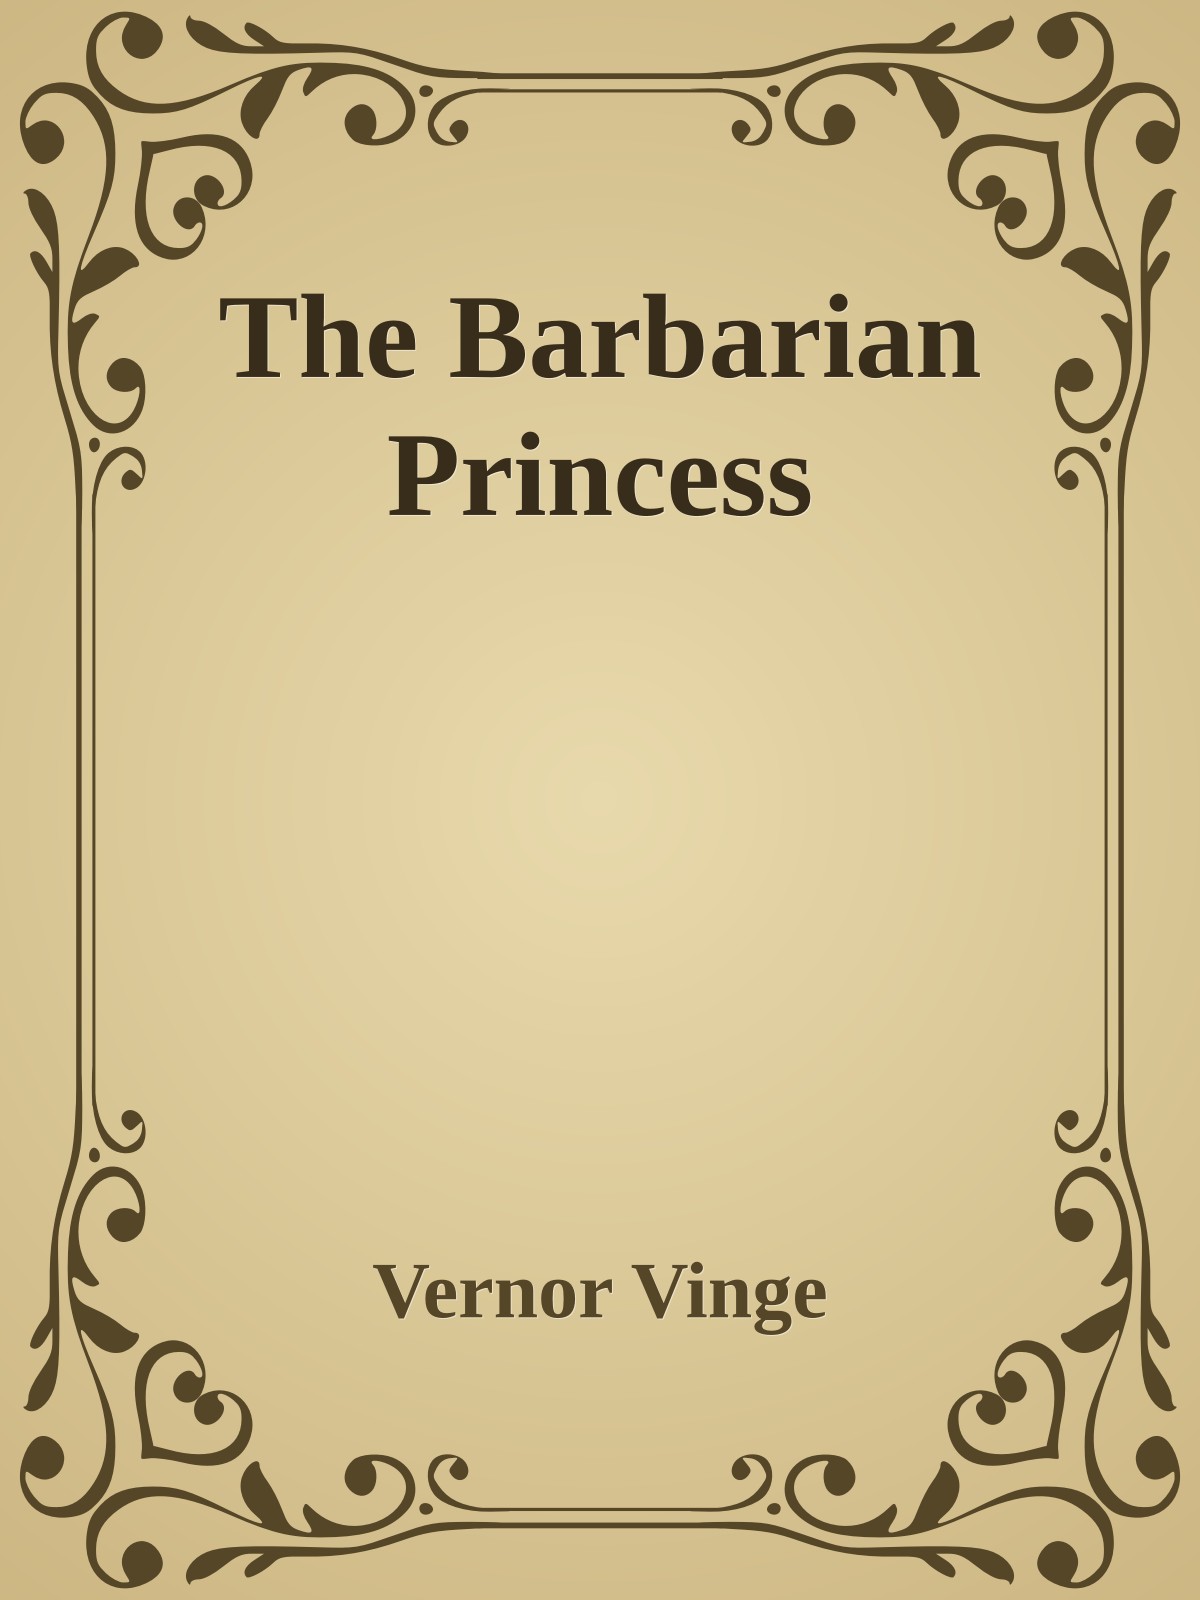 The Barbarian Princess